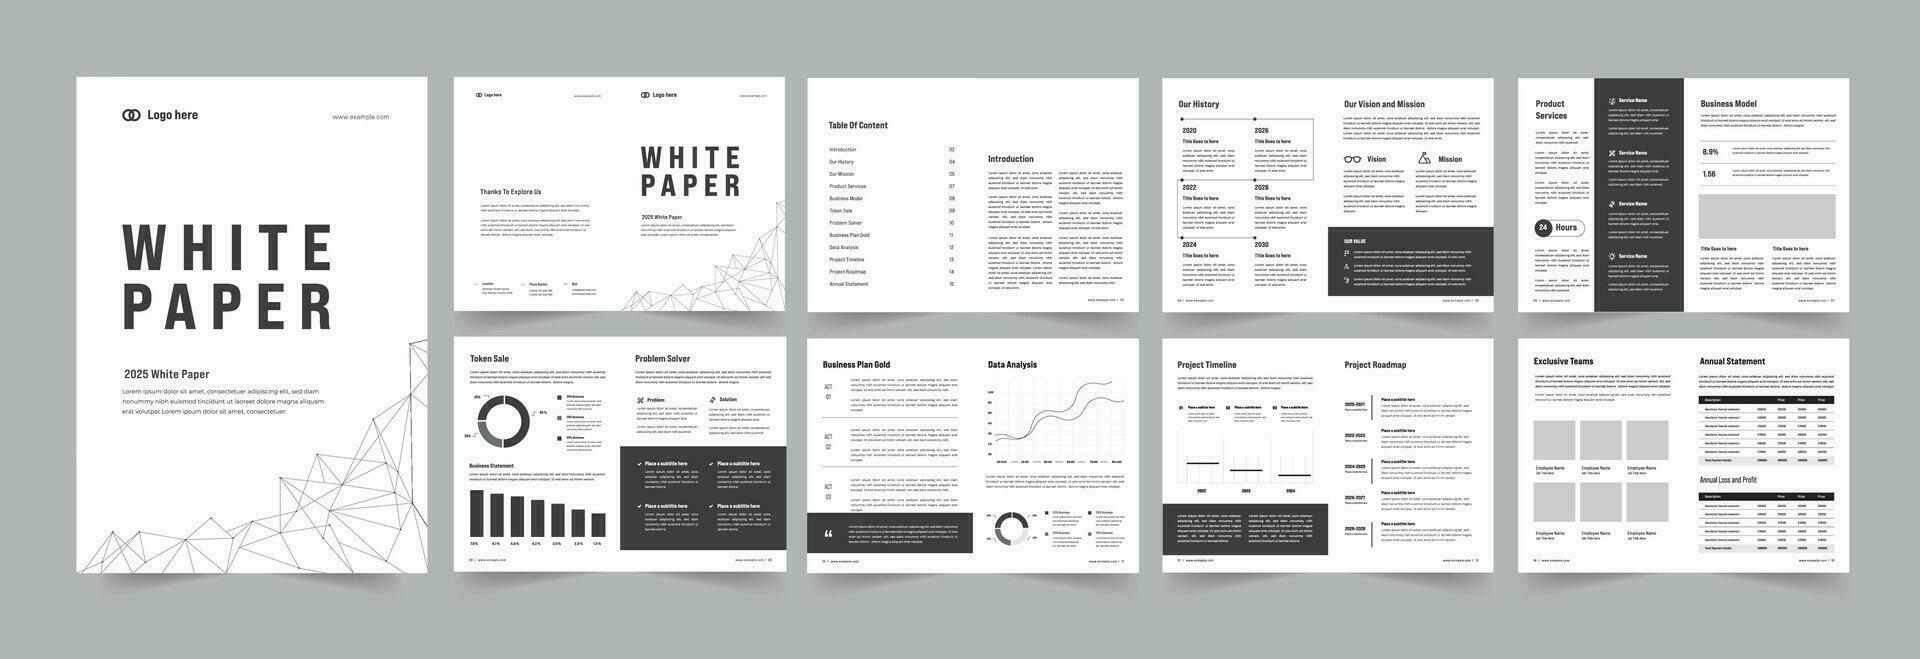 Weiß Papier oder Weiß Papier Layout Design vektor